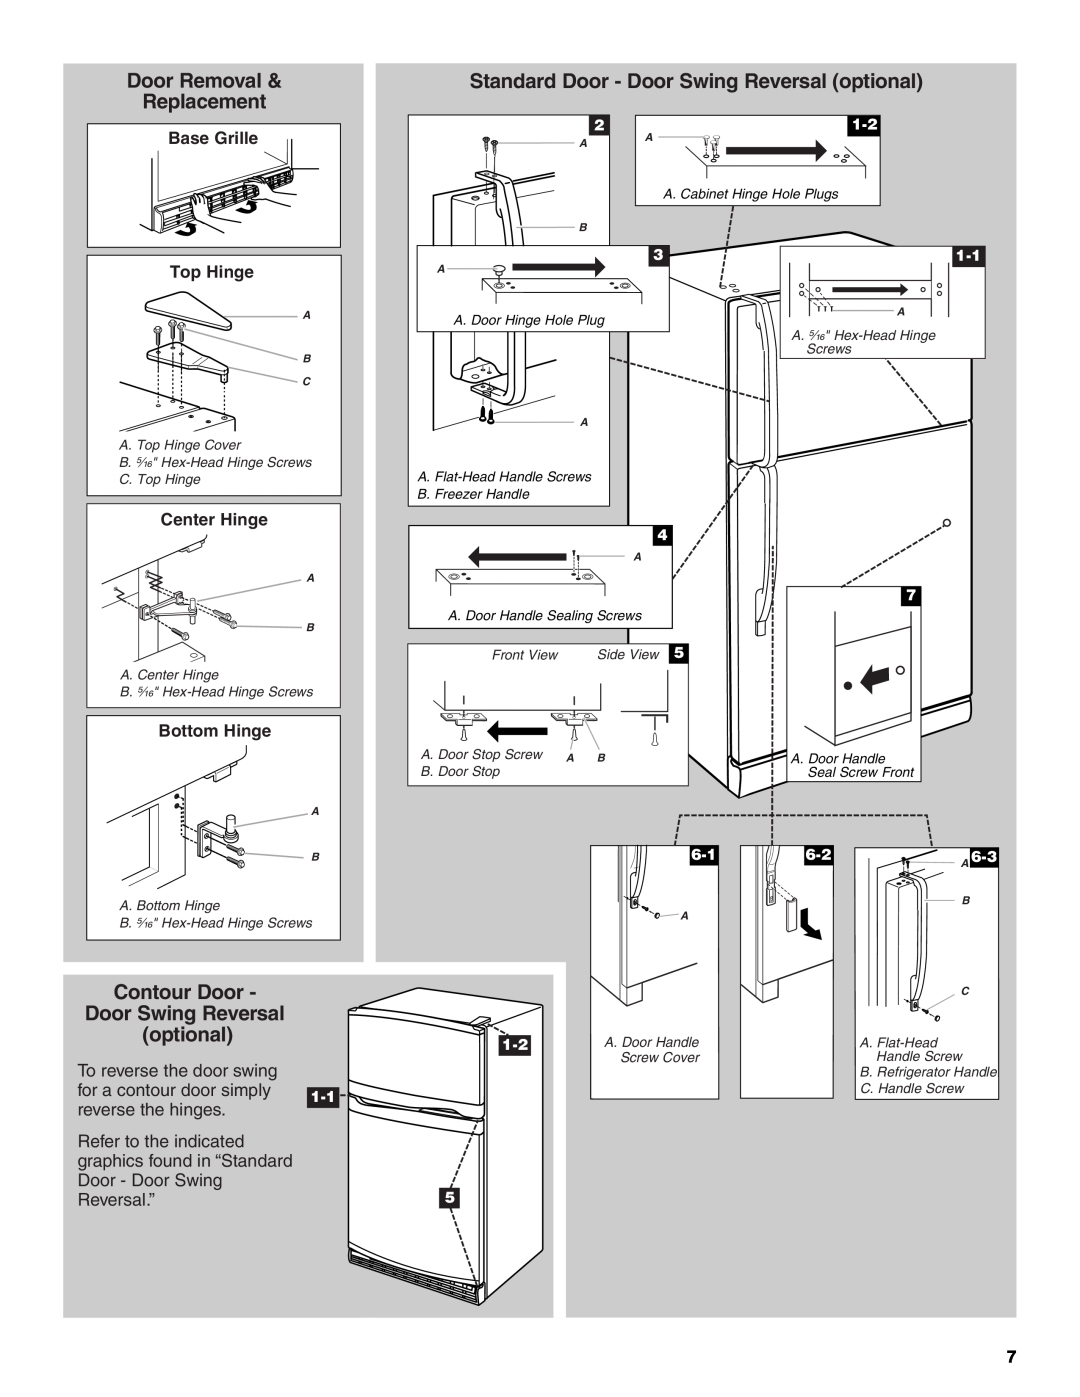 Whirlpool W10131417A Door Removal, Standard Door - Door Swing Reversal optional, Replacement, Contour Door, Top Hinge 